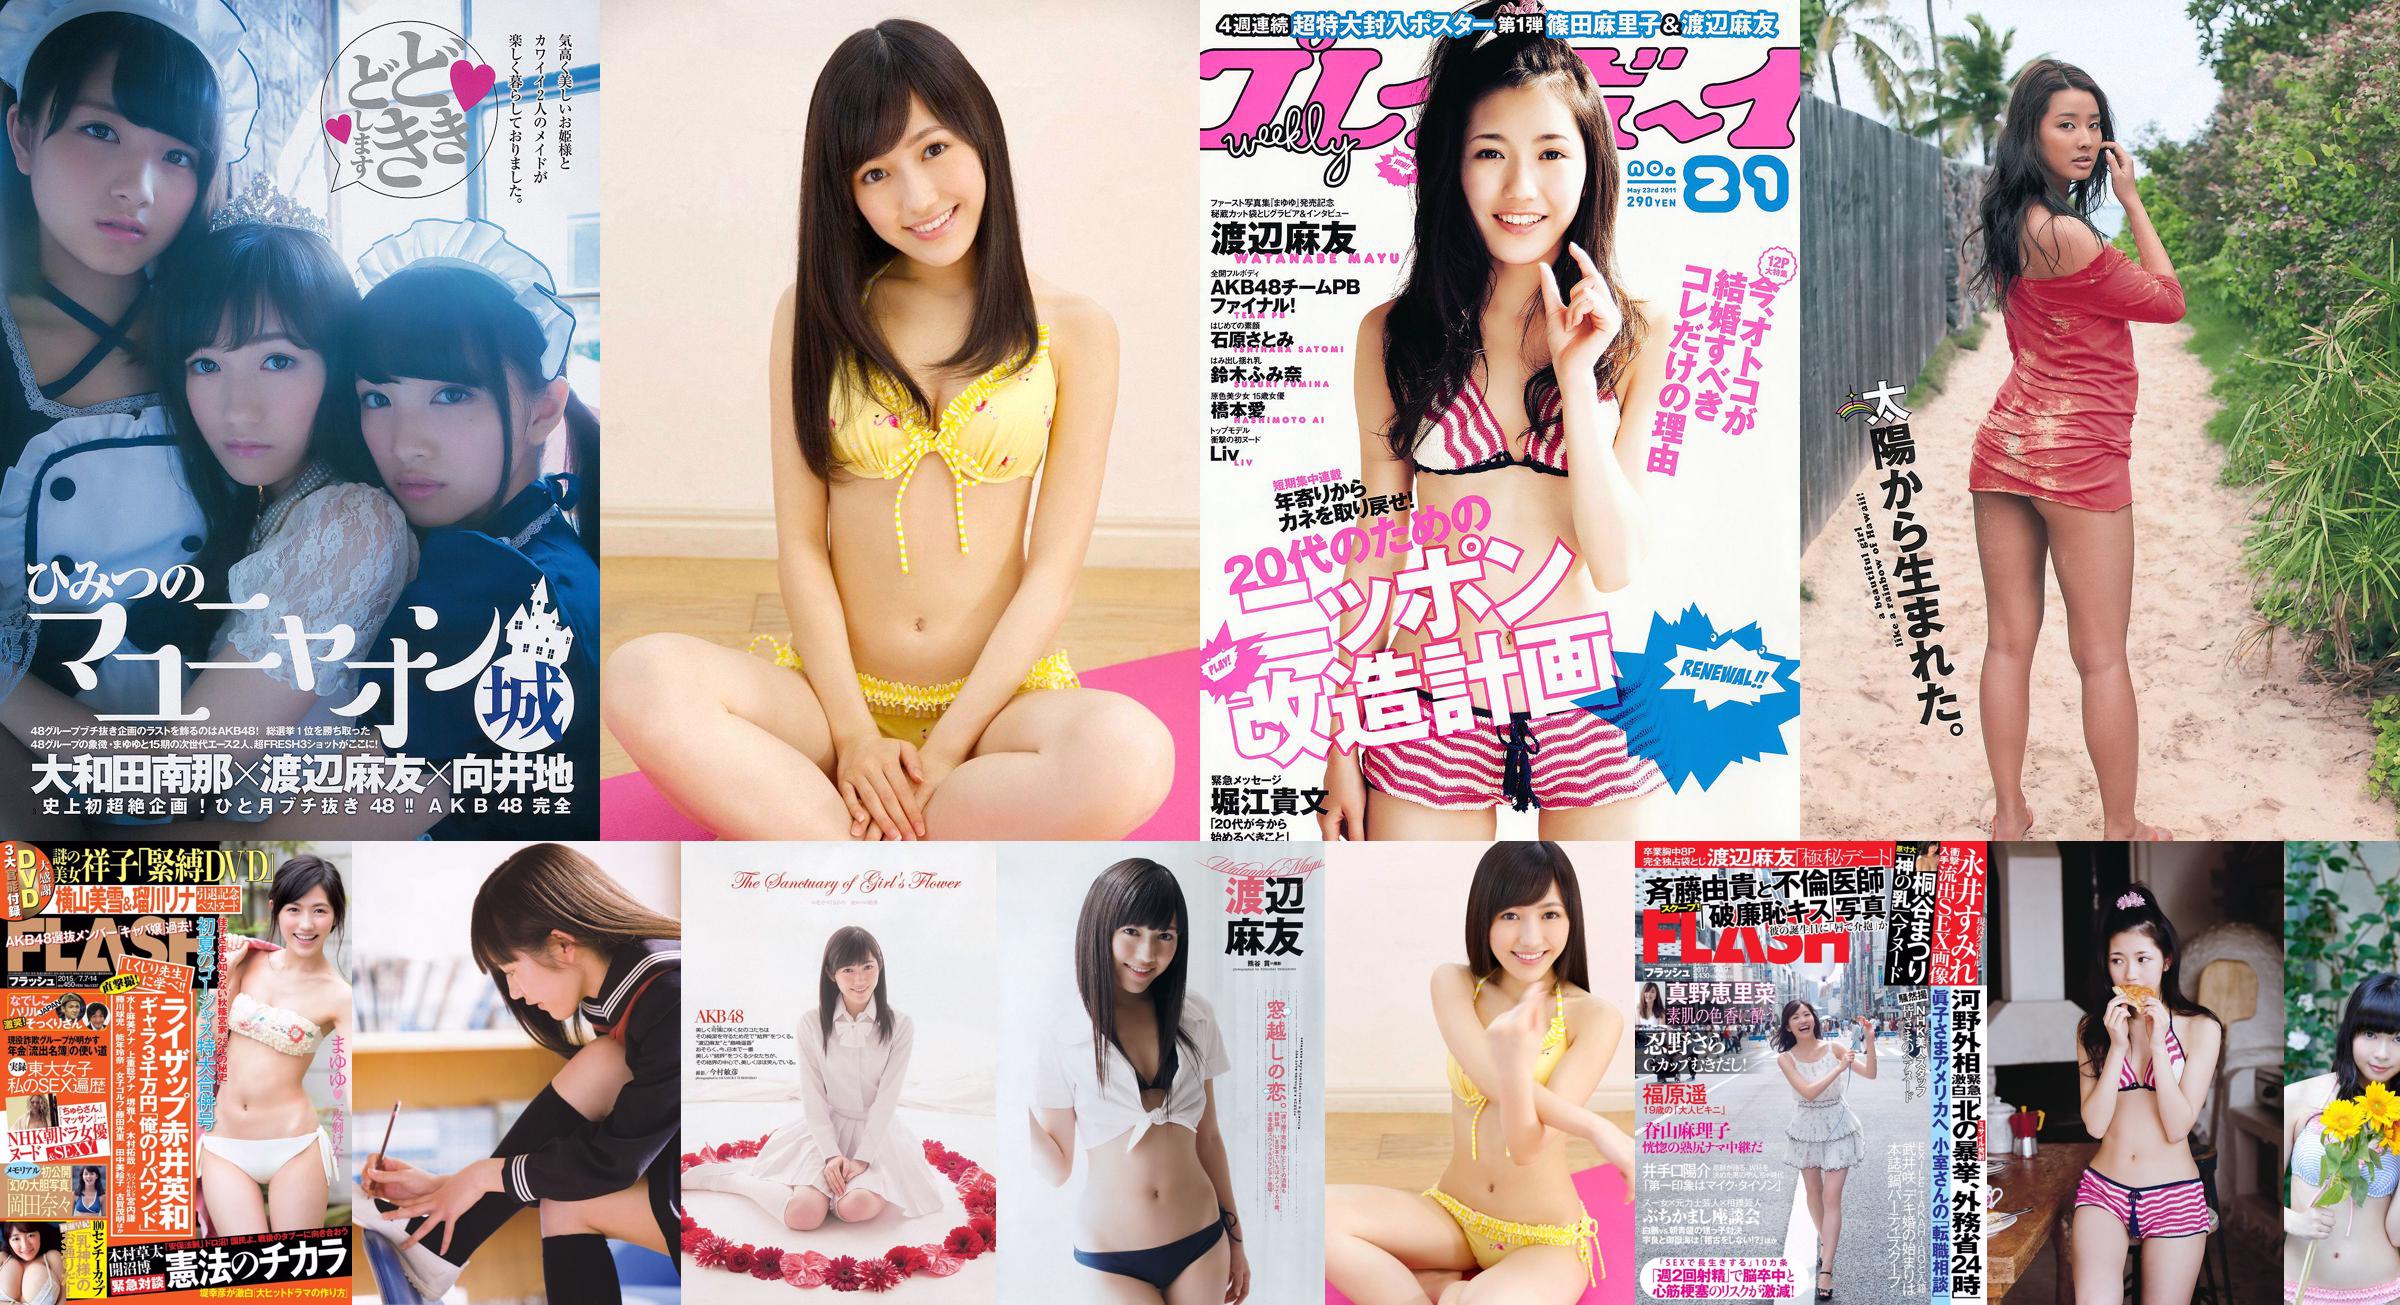 [FLASH] Mayu Watanabe Saki Yanase Nana Okada 2015.07.07-14 Ảnh No.166bc1 Trang 3